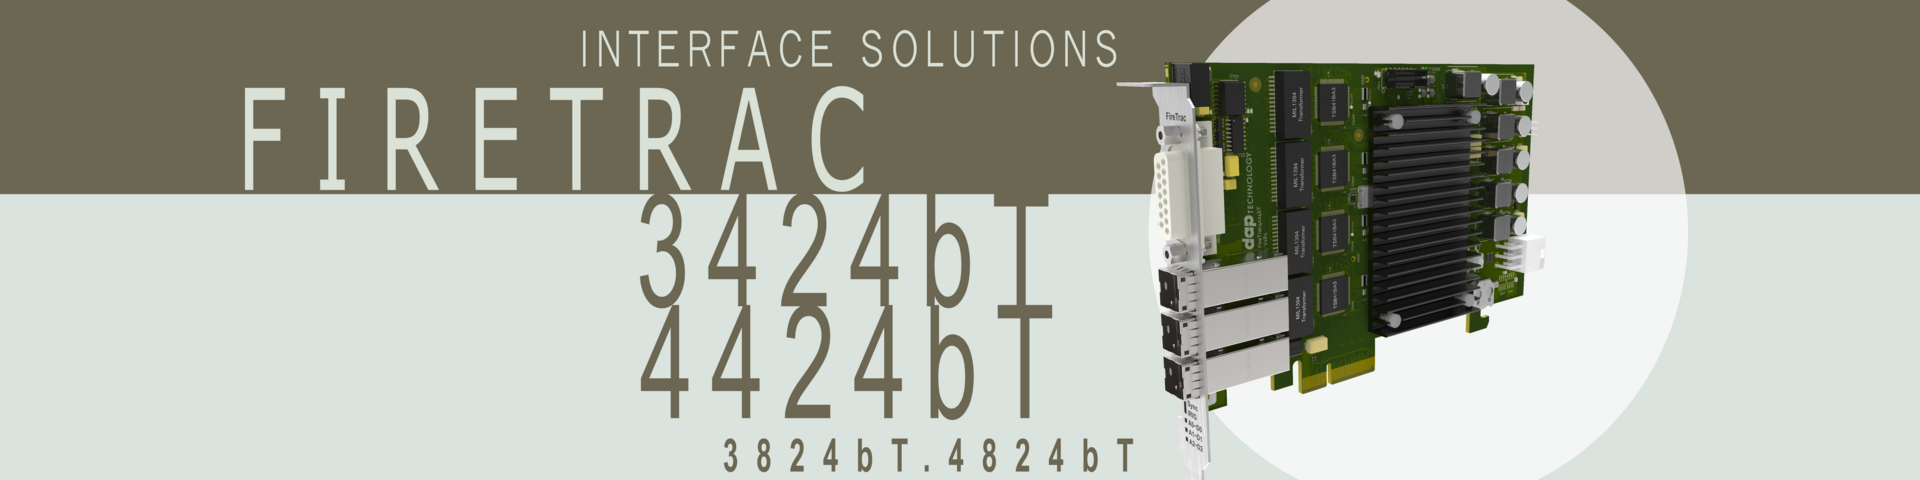 AS5643 Advanced Interface Card - FireTracx424bT/x824bT